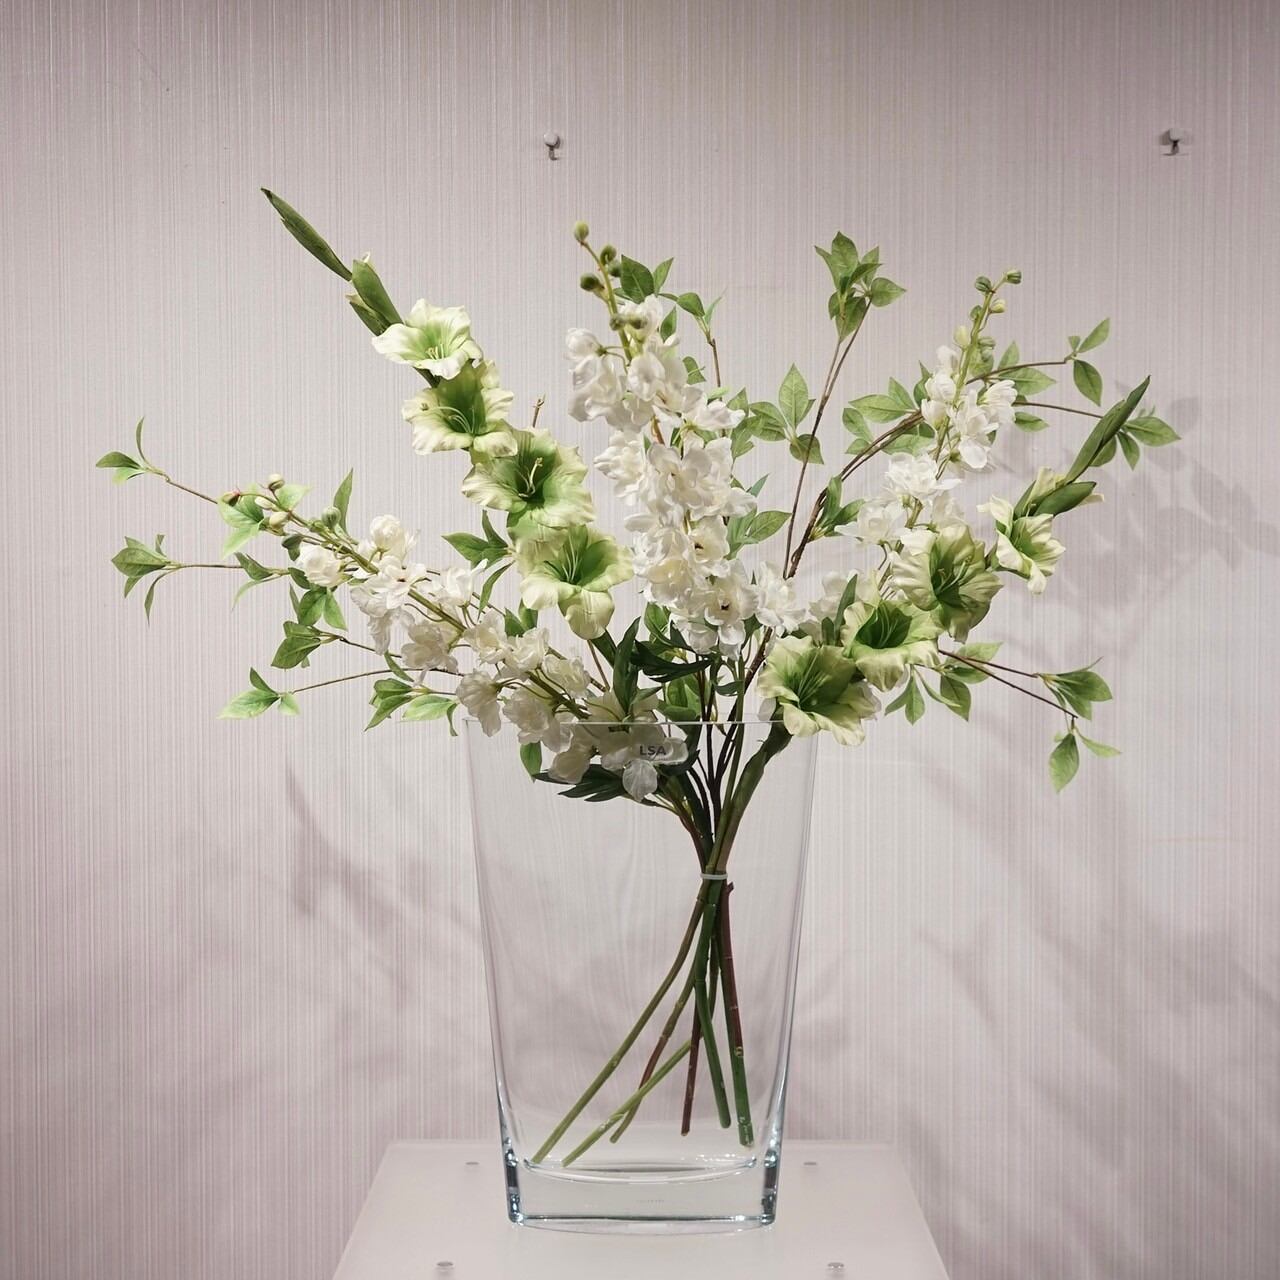 中古】LSA フラワーベース 造花付き ハンドメイド 花瓶 FLORIANベース